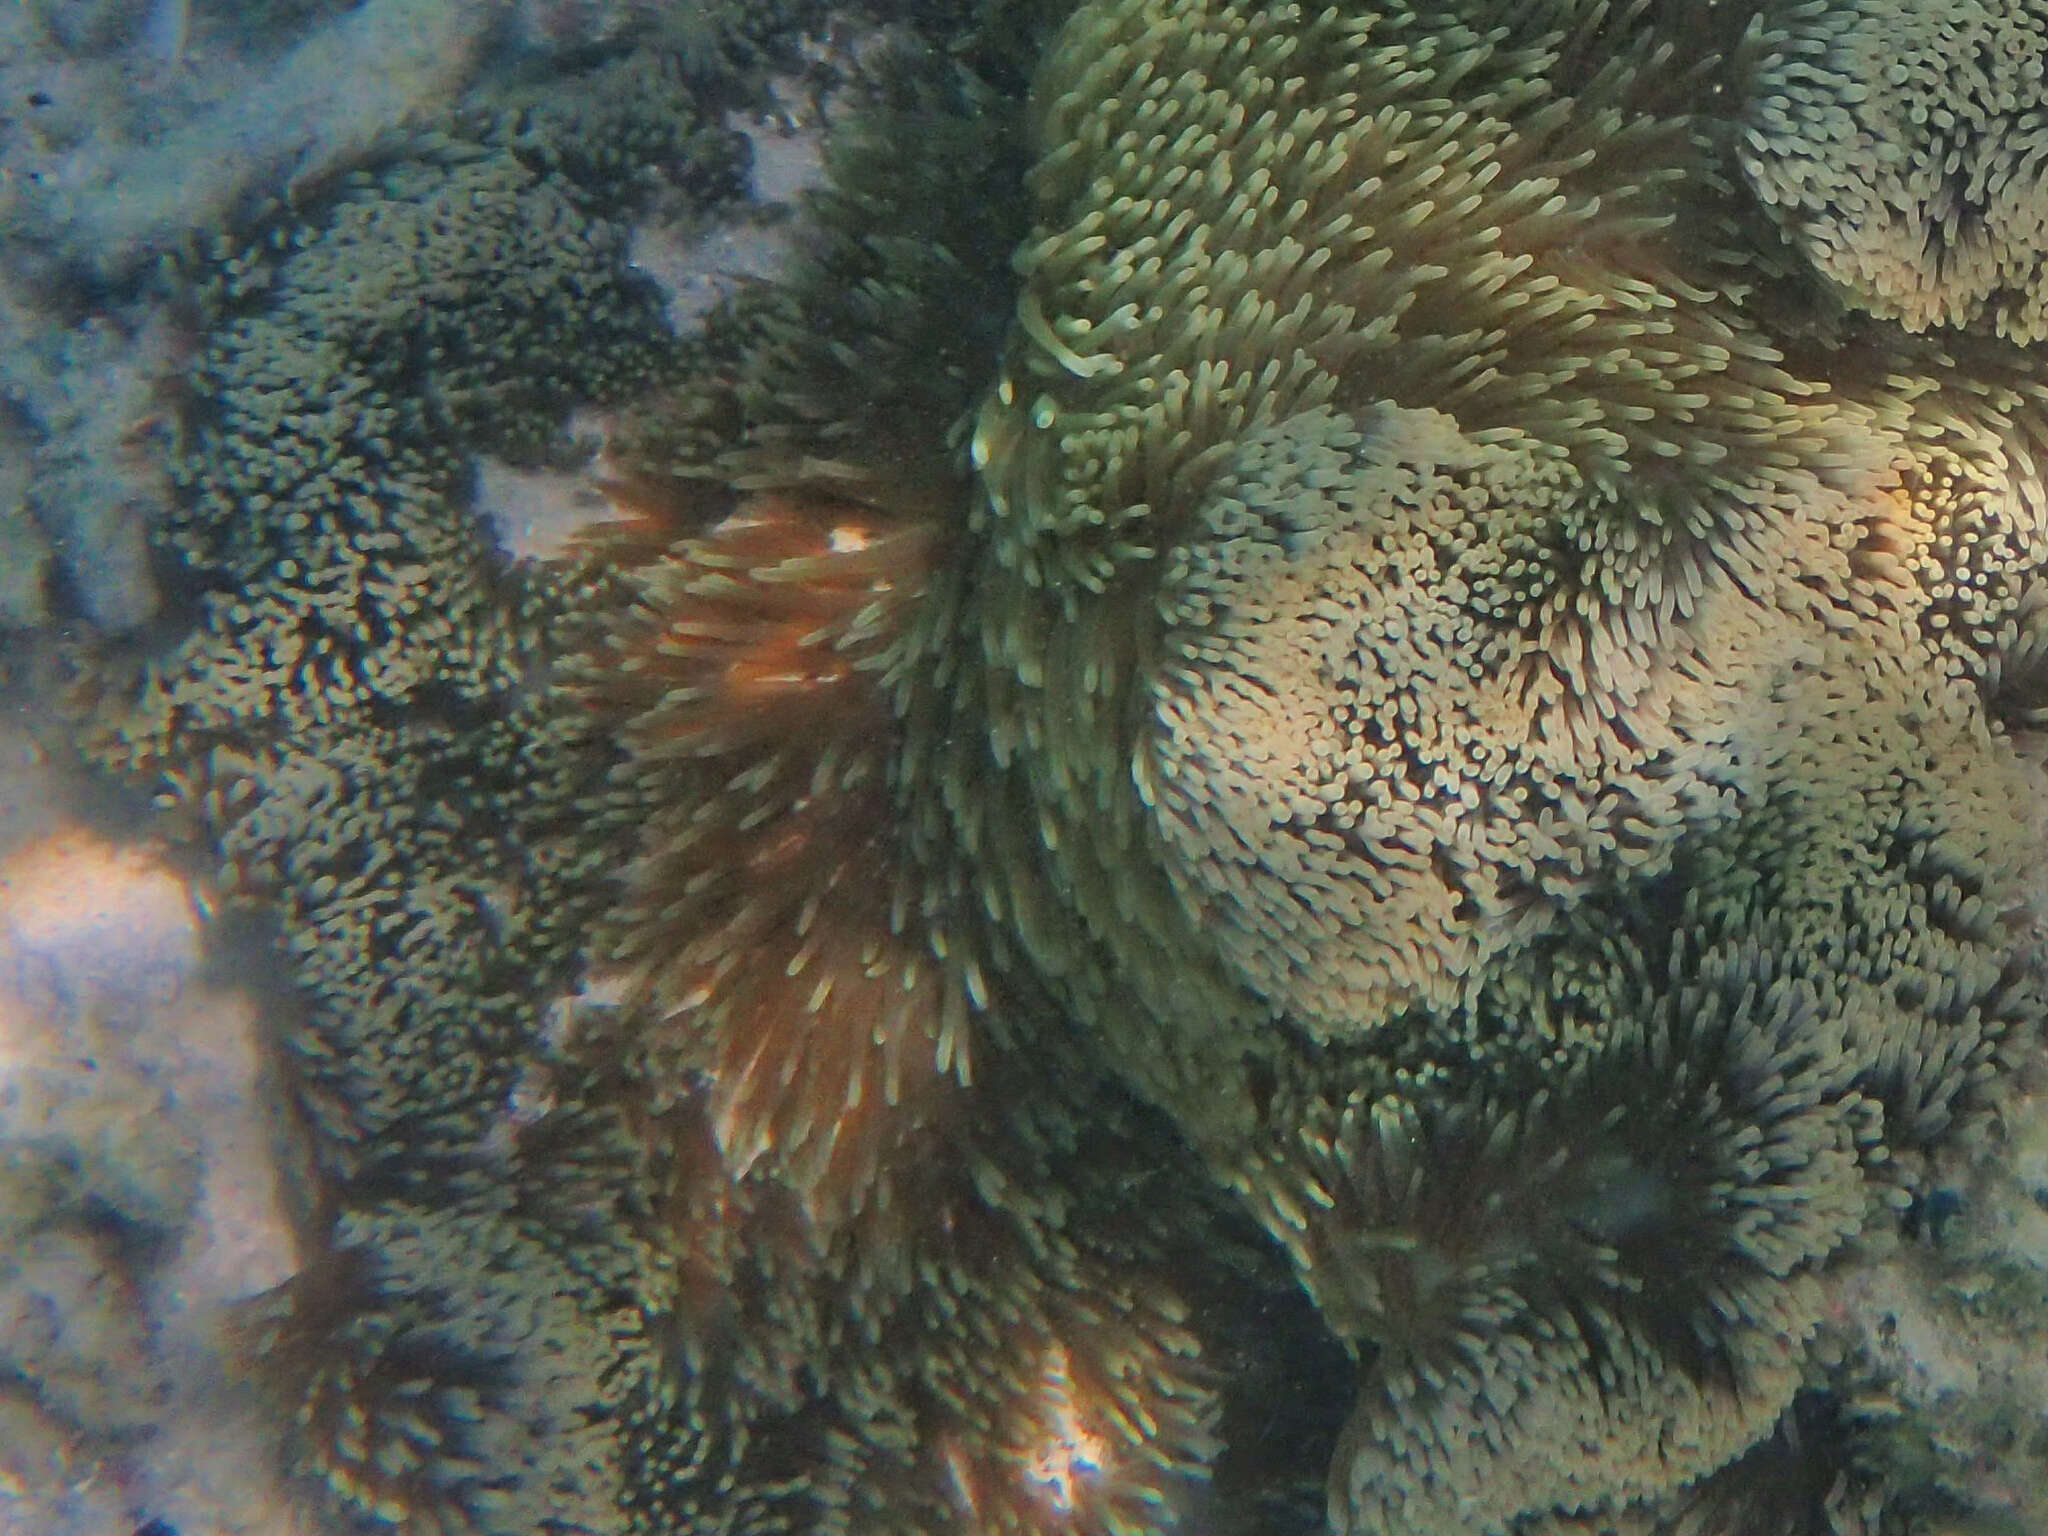 Image of merten's carpet anemone